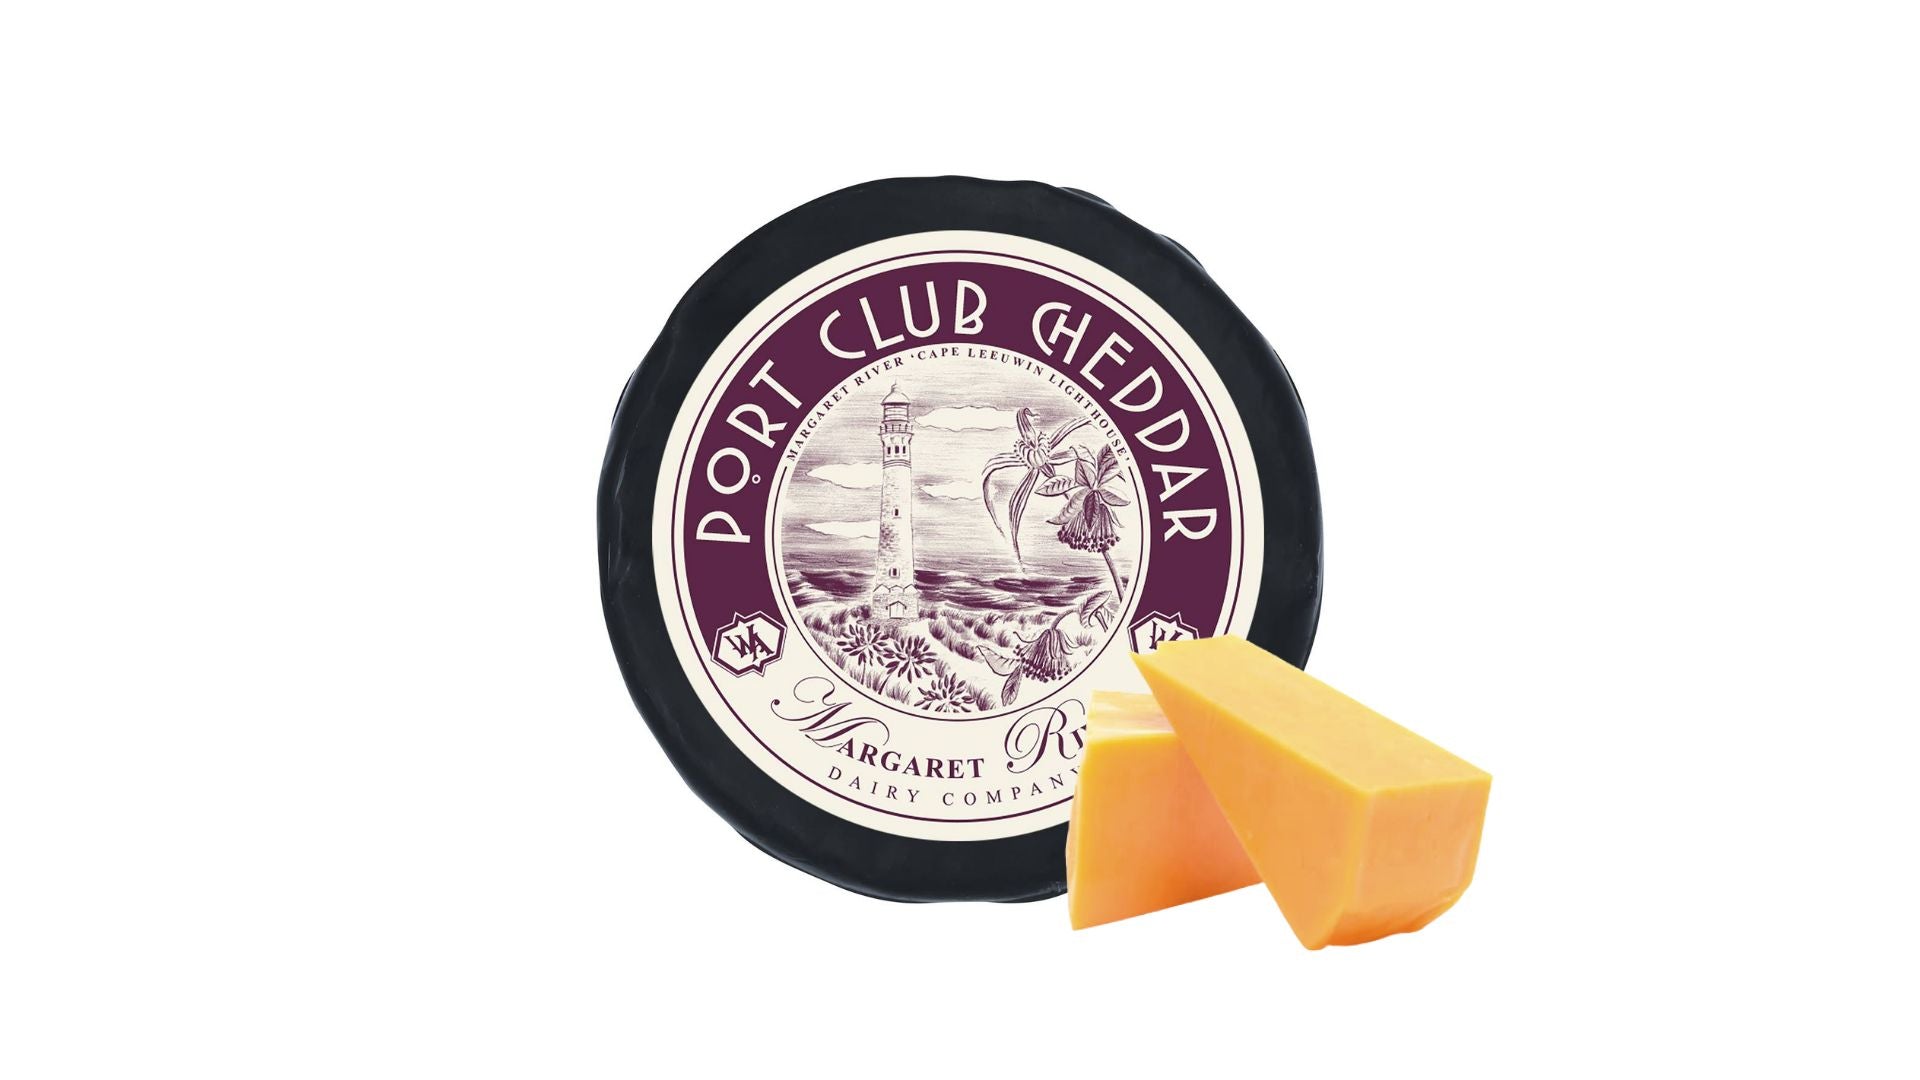 Margaret River Cheddar Port Club Cheddar Cheese 150g